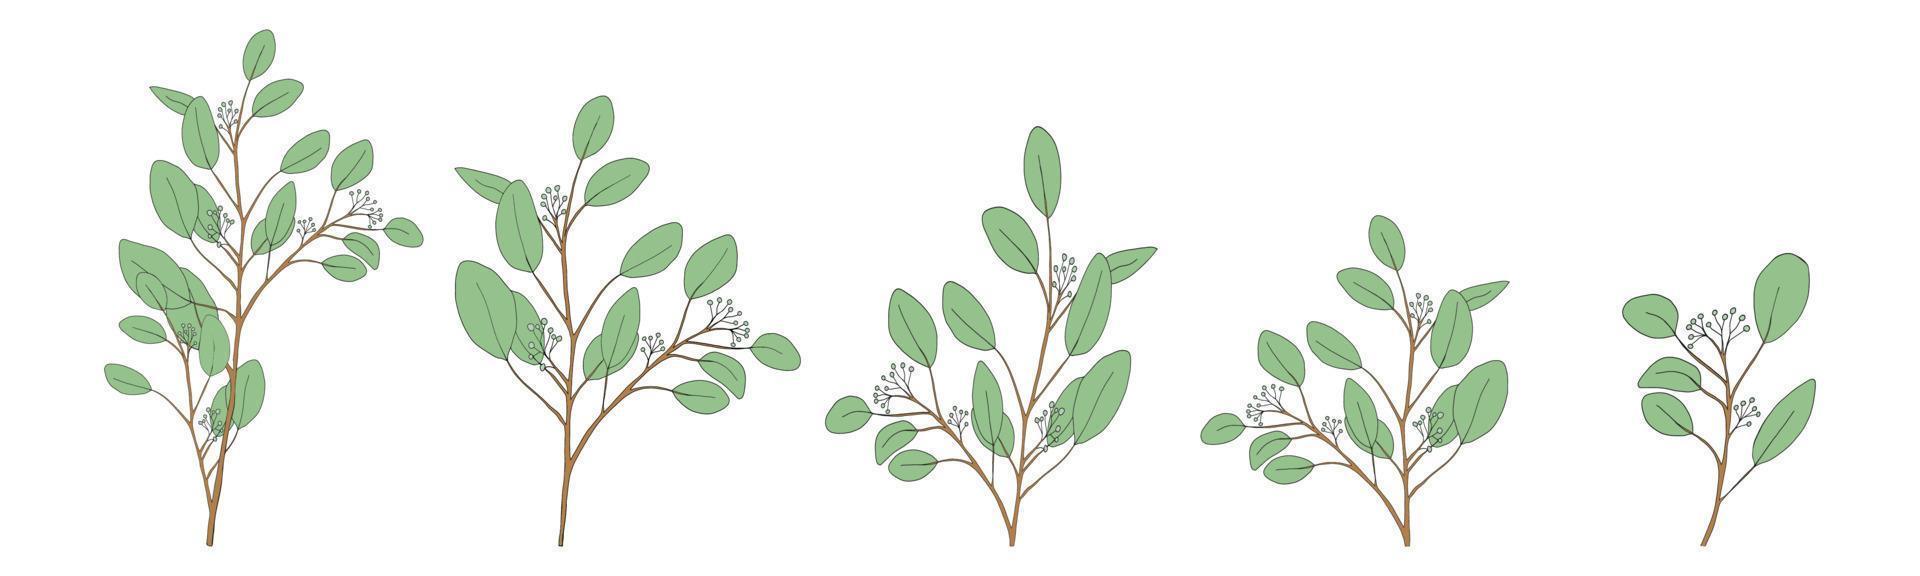 eukalyptusblad rund form på branches.set vektorillustration naturliga gröna bladelement, eukalyptuspopulus isolerad på vit bakgrund enkel och söt design för textil eller gratulationskort vektor